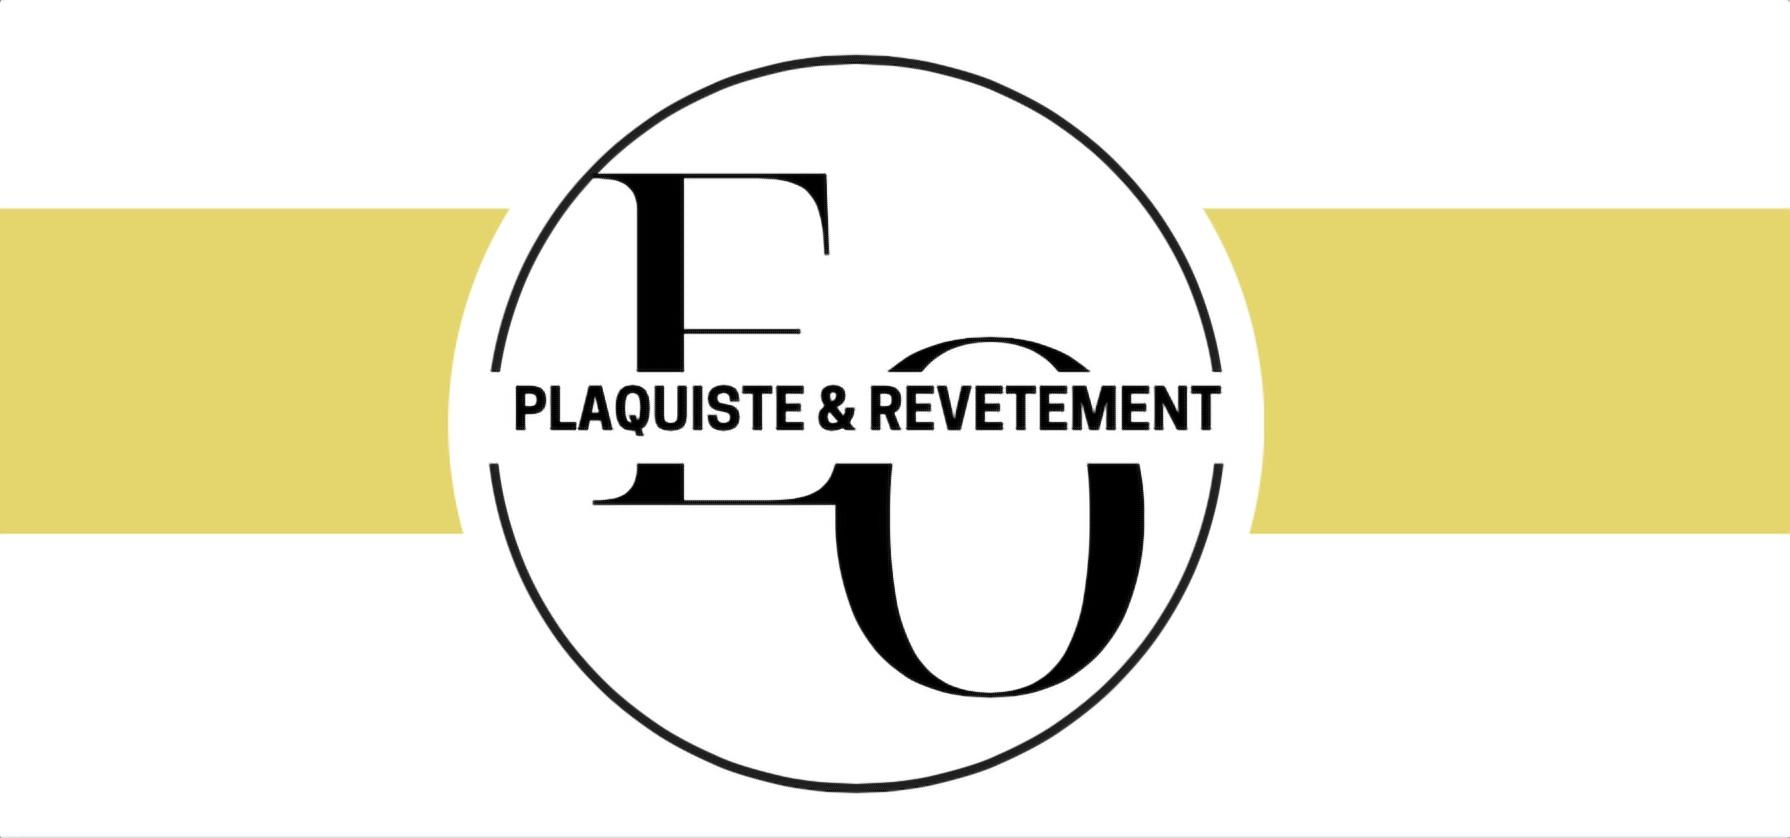 Eo Plaquiste & Revetements Echillais